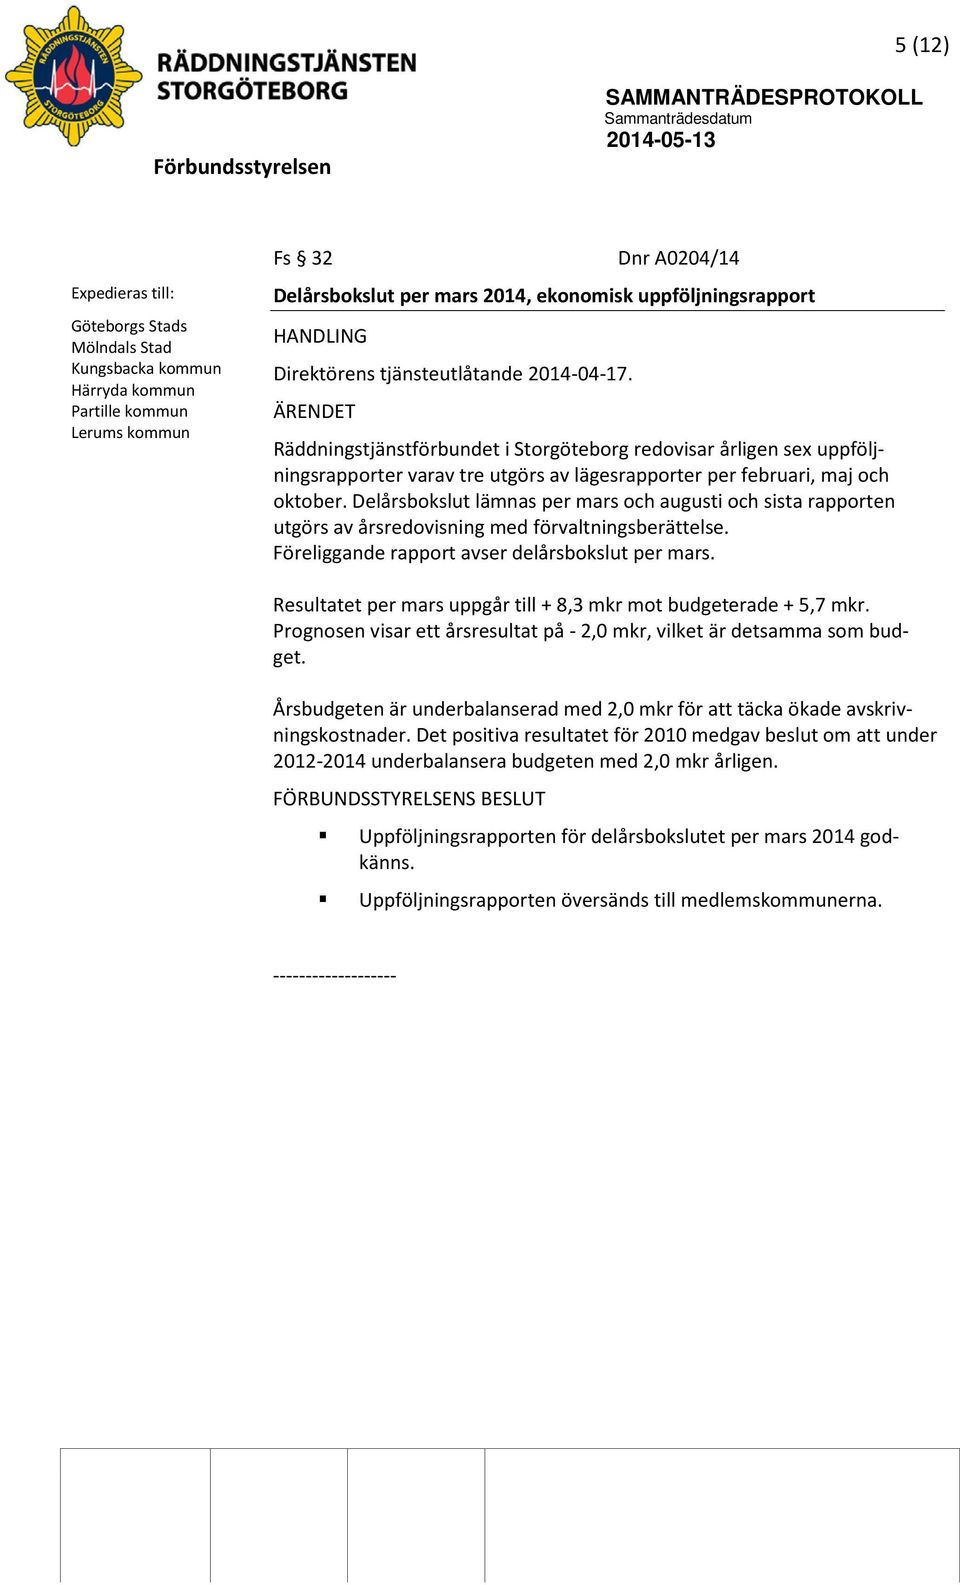 ÄRENDET Räddningstjänstförbundet i Storgöteborg redovisar årligen sex uppföljningsrapporter varav tre utgörs av lägesrapporter per februari, maj och oktober.